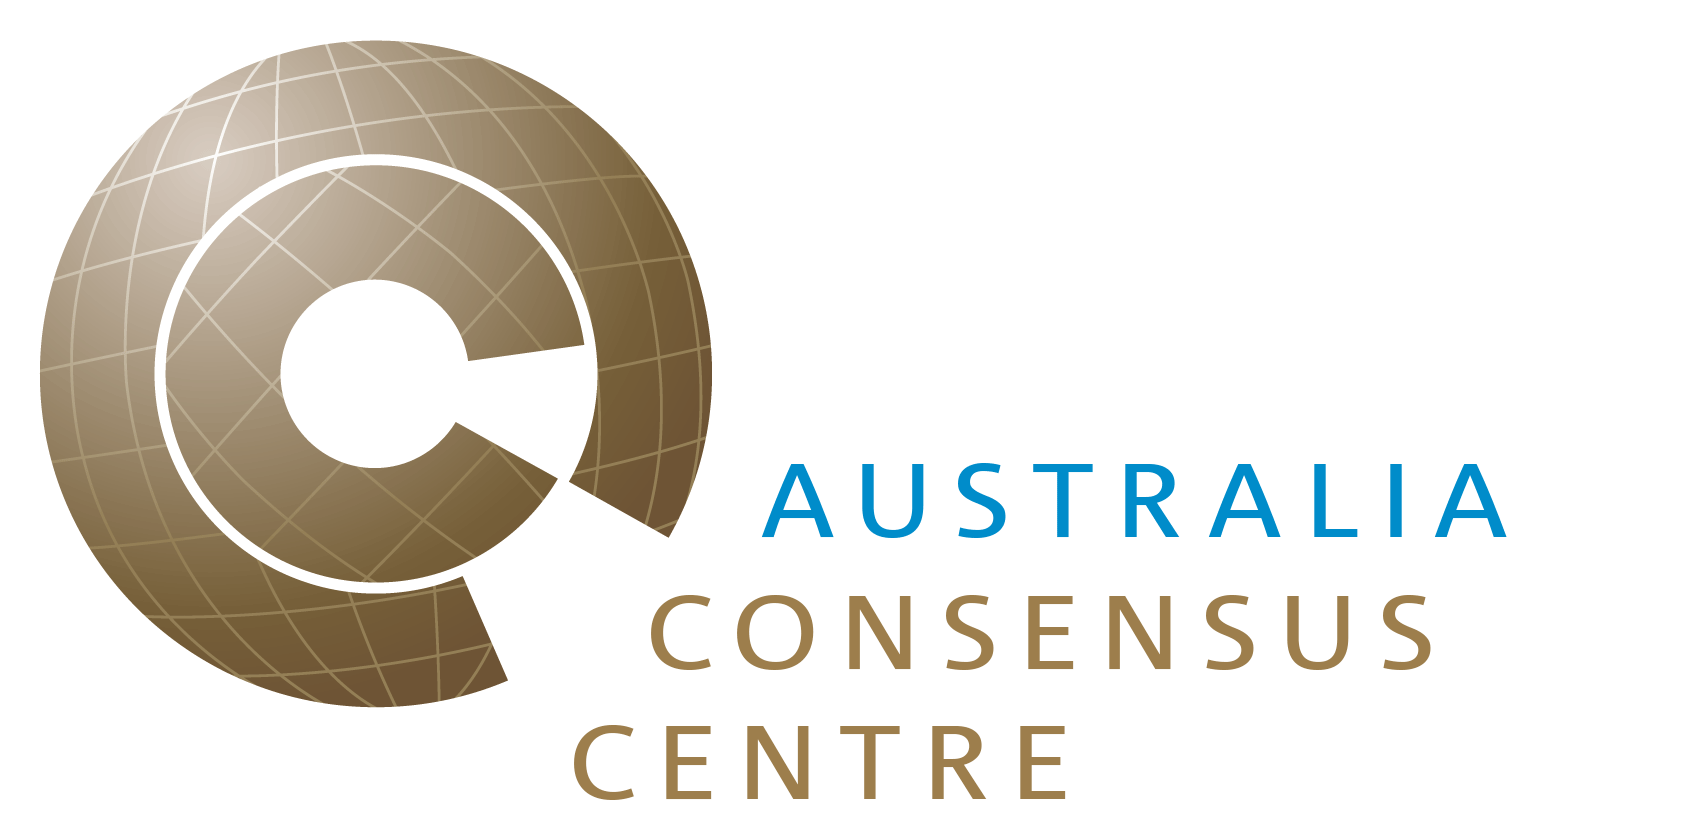 Copenhagen Consensus Center Logo